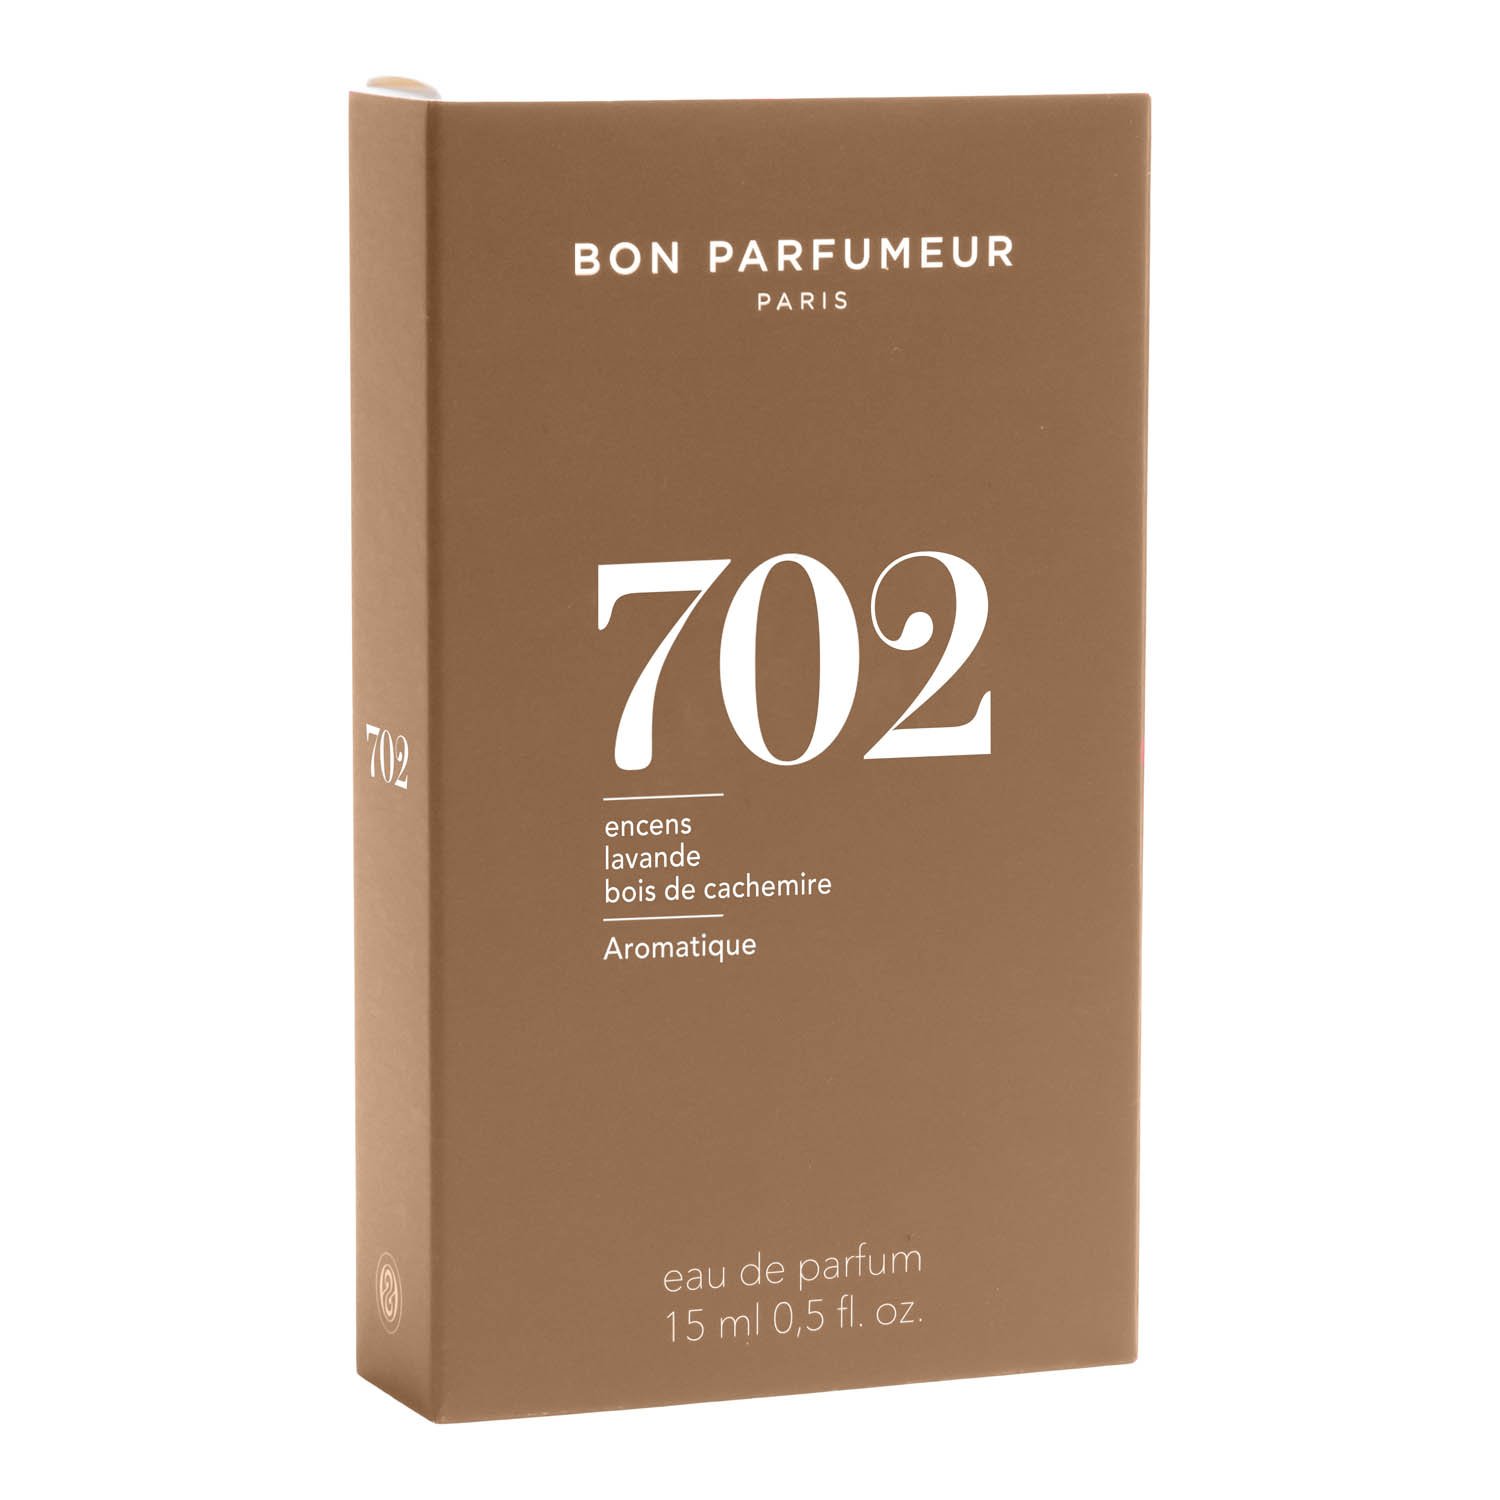 Bon Parfumeur Eau de Parfum 702 15 ml